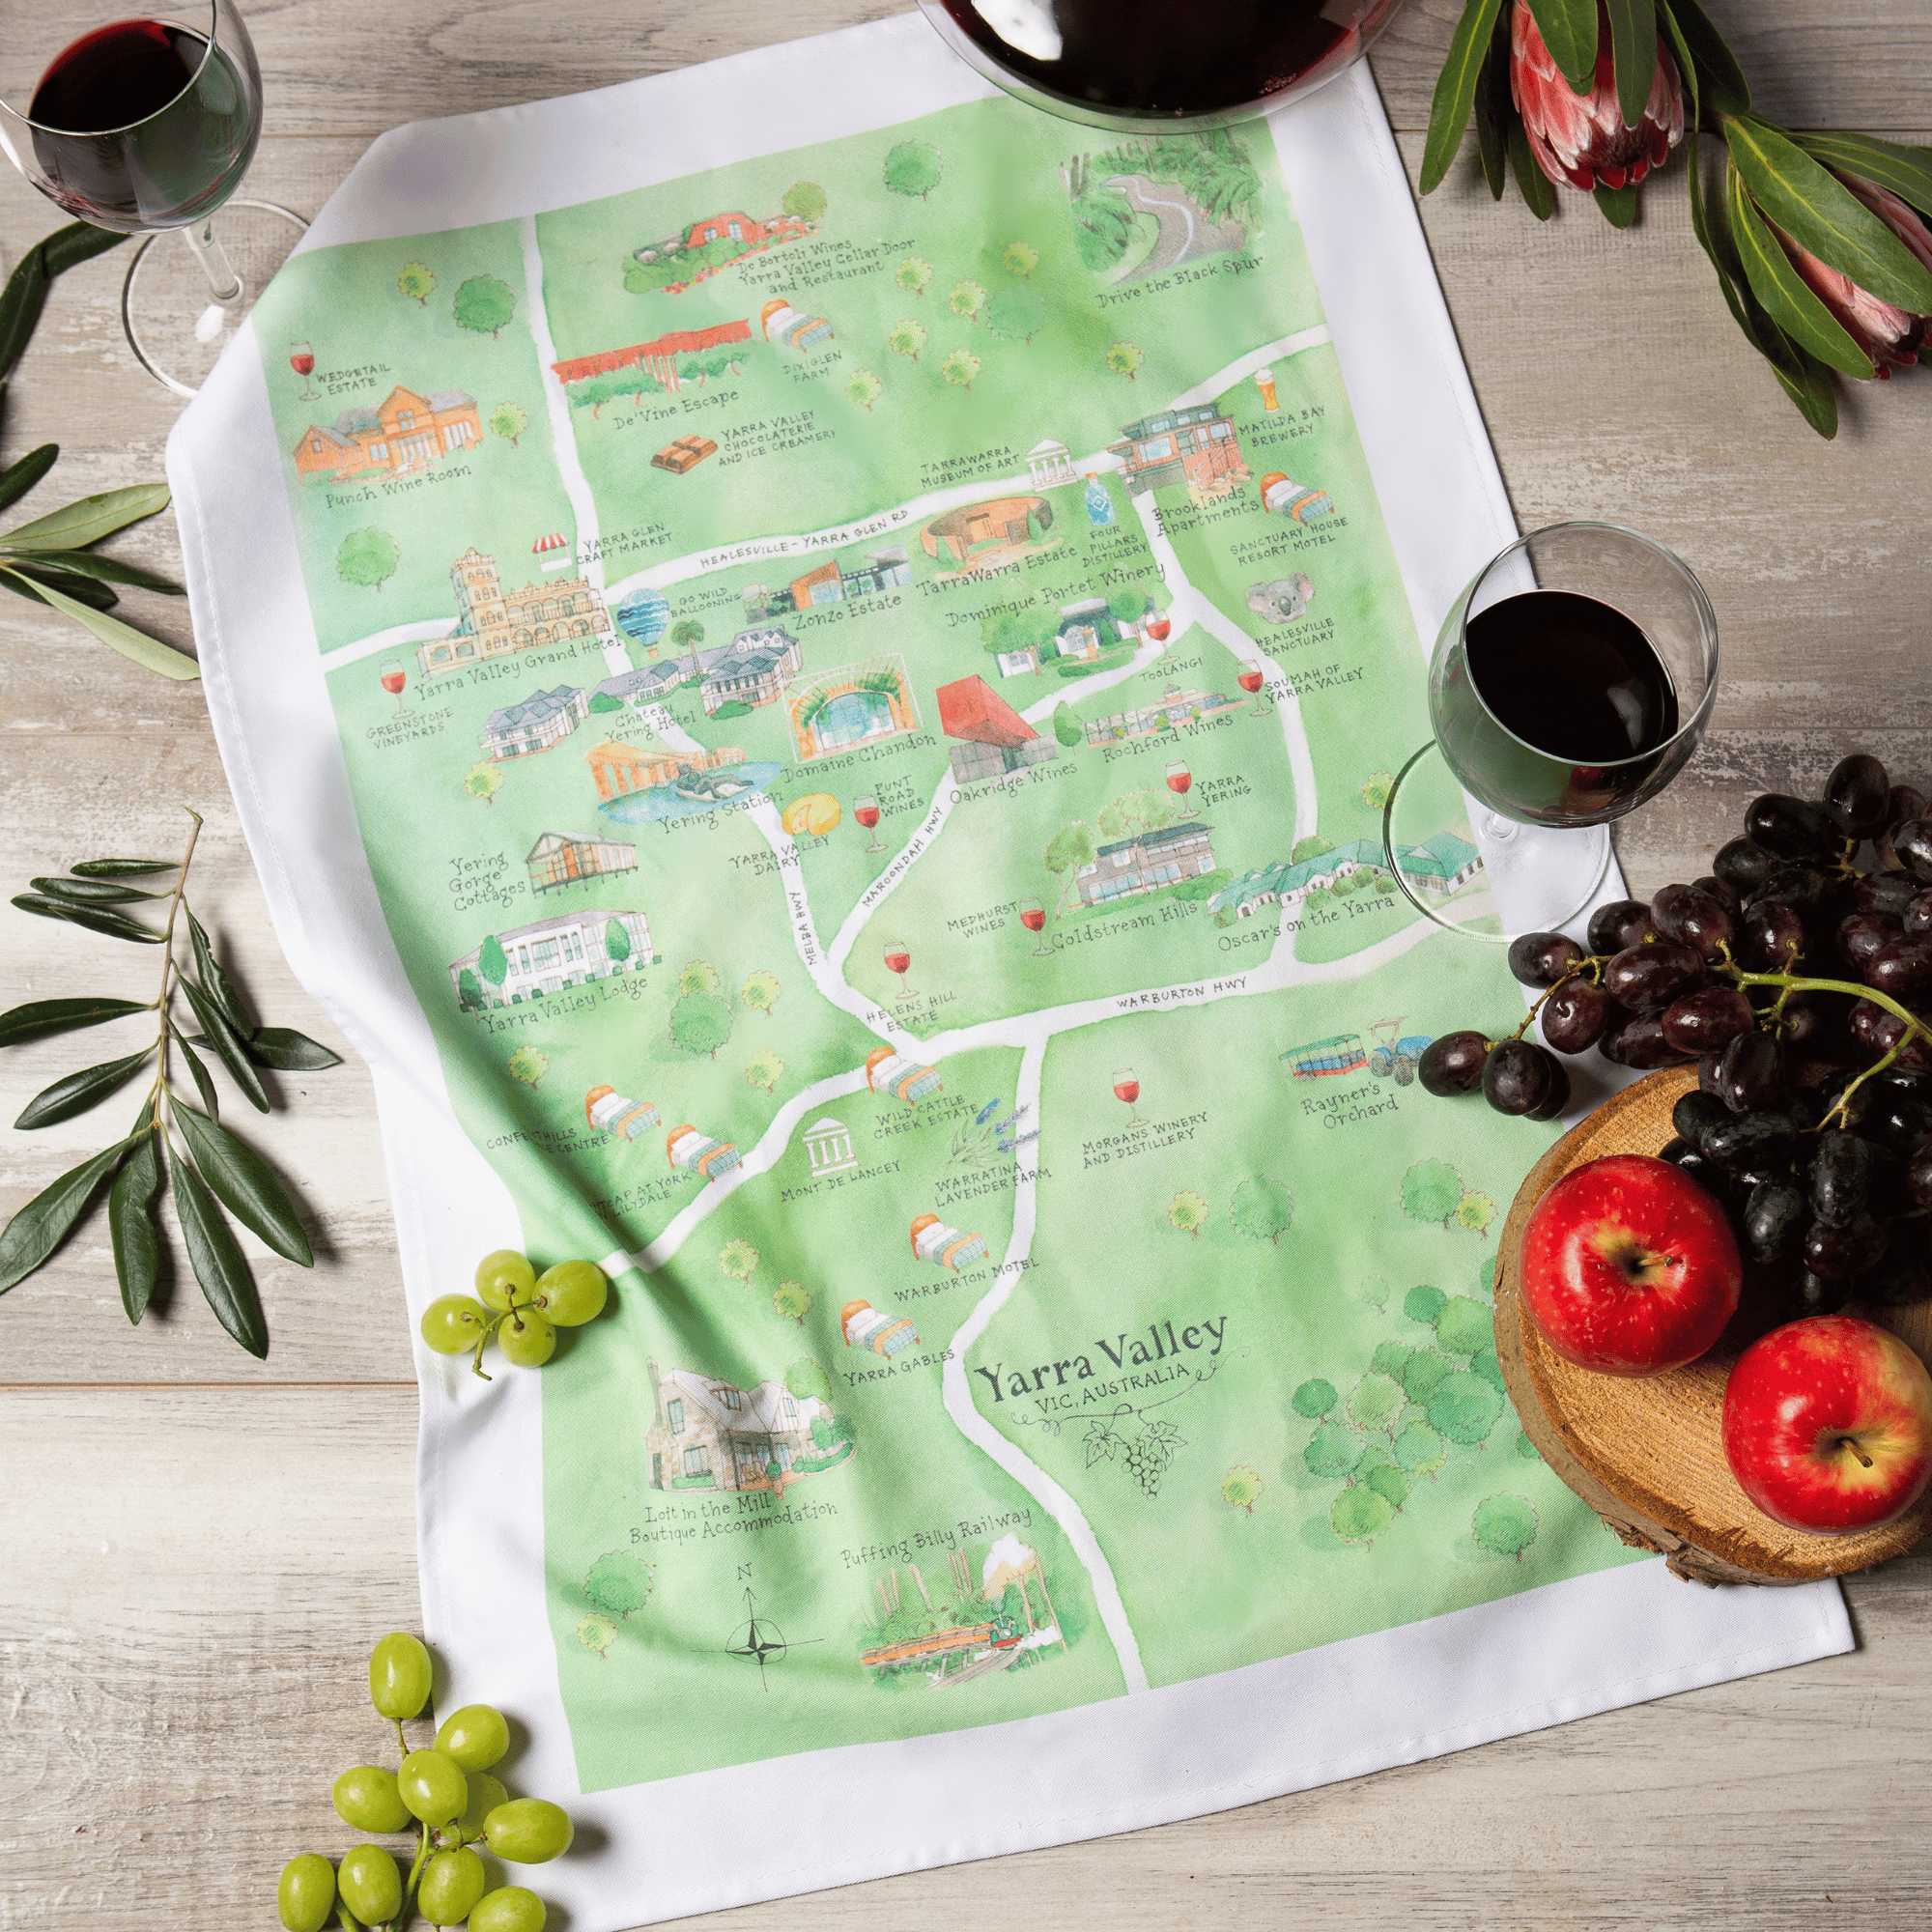 Yarra Valley wine region map tea towel in stylised image